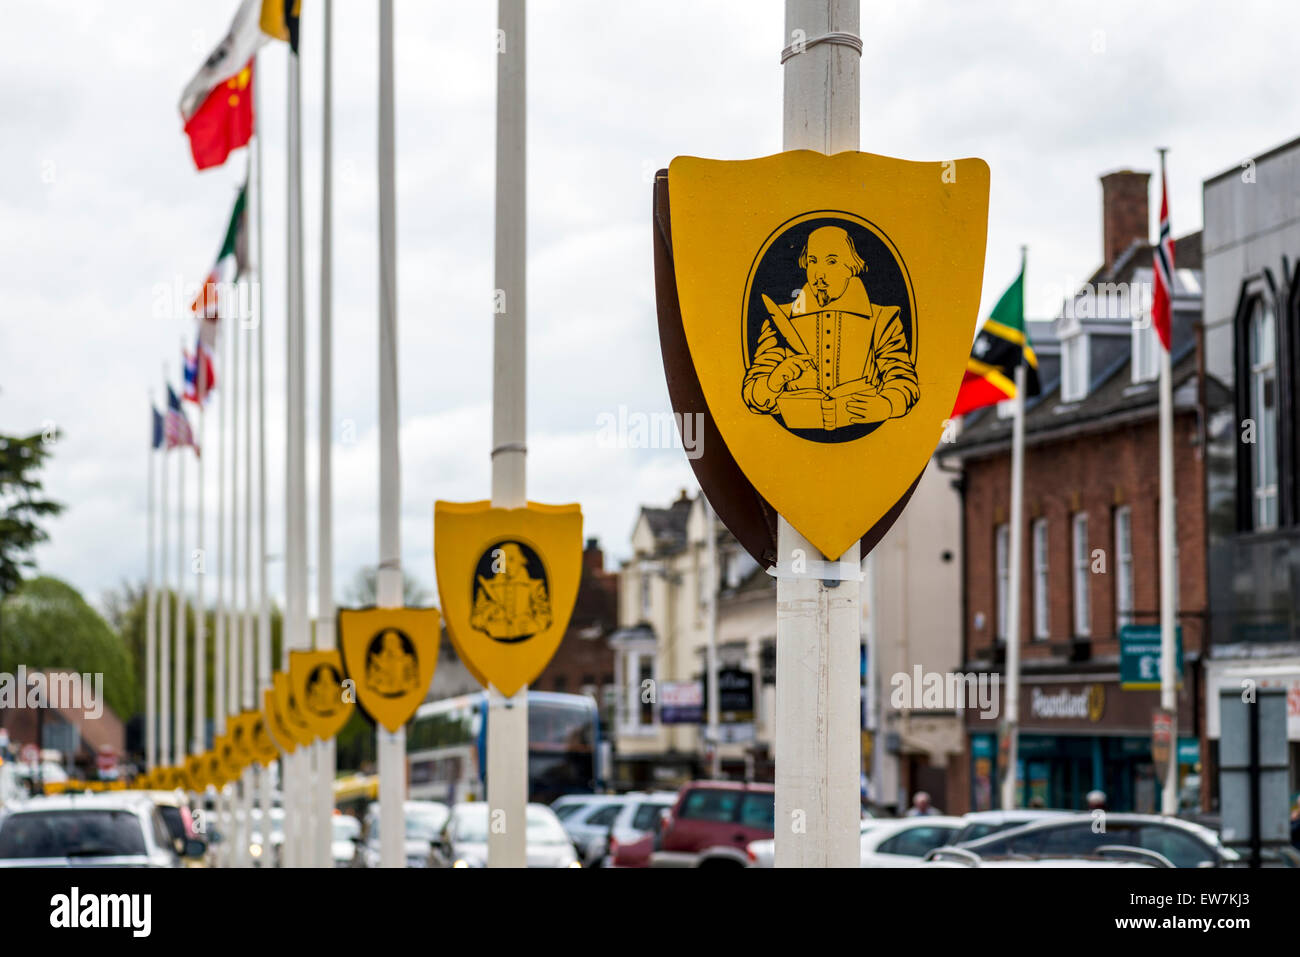 La imagen de William Shakespeare escribiendo una obra aparece en los escudos en la bandera polacos en su ciudad natal de Stratford-upon-Avon, REINO UNIDO Foto de stock